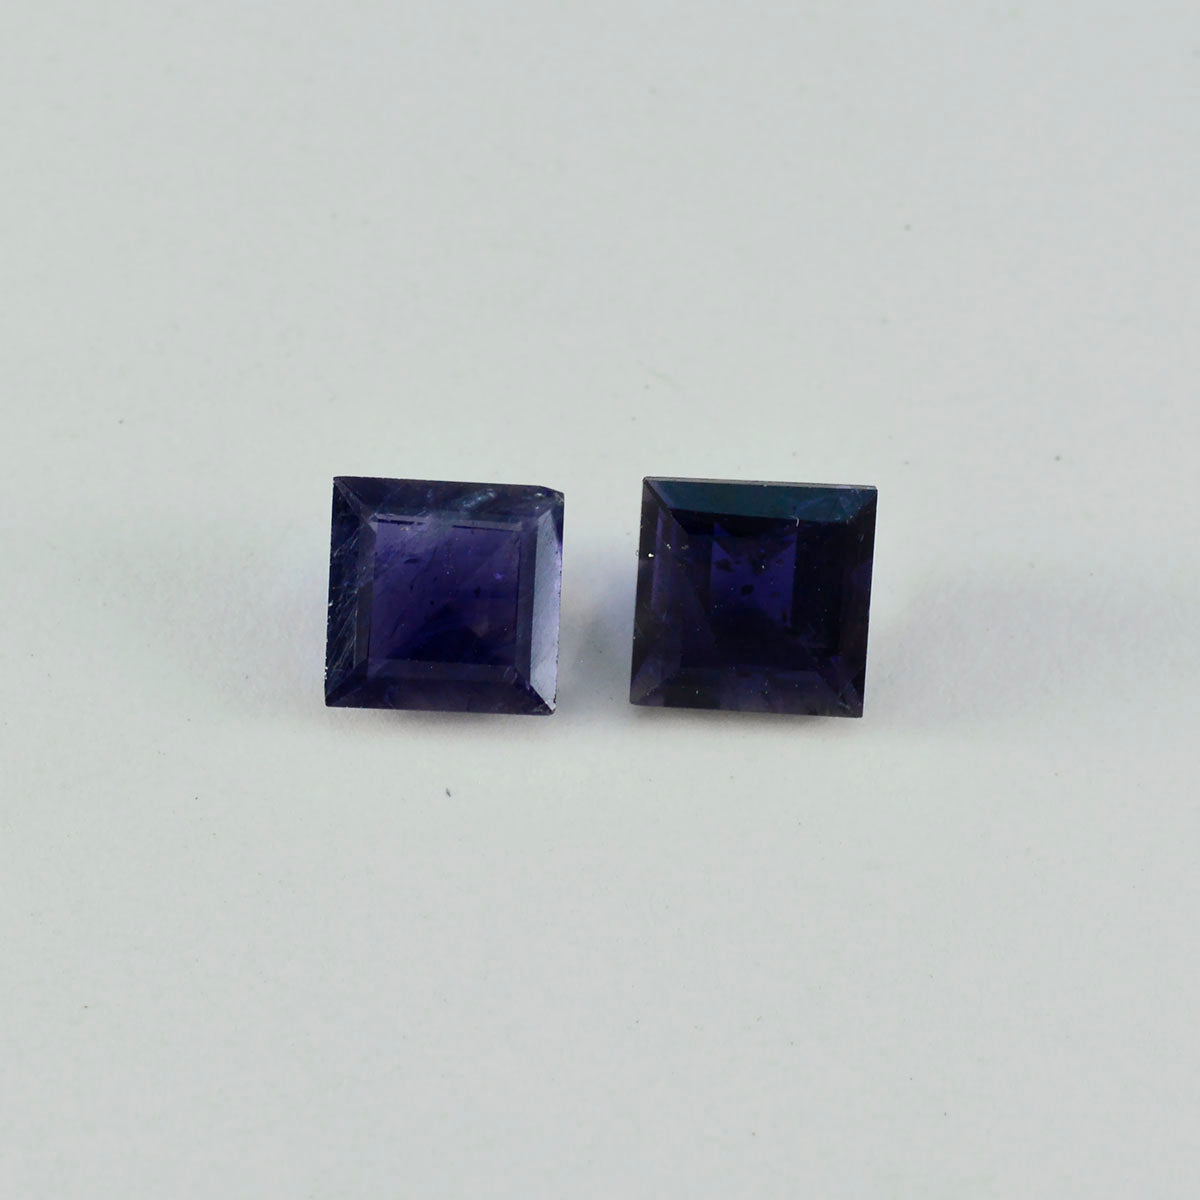 Riyogems 1PC blauw ioliet gefacetteerd 13x13 mm vierkante vorm aantrekkelijke kwaliteitsedelstenen